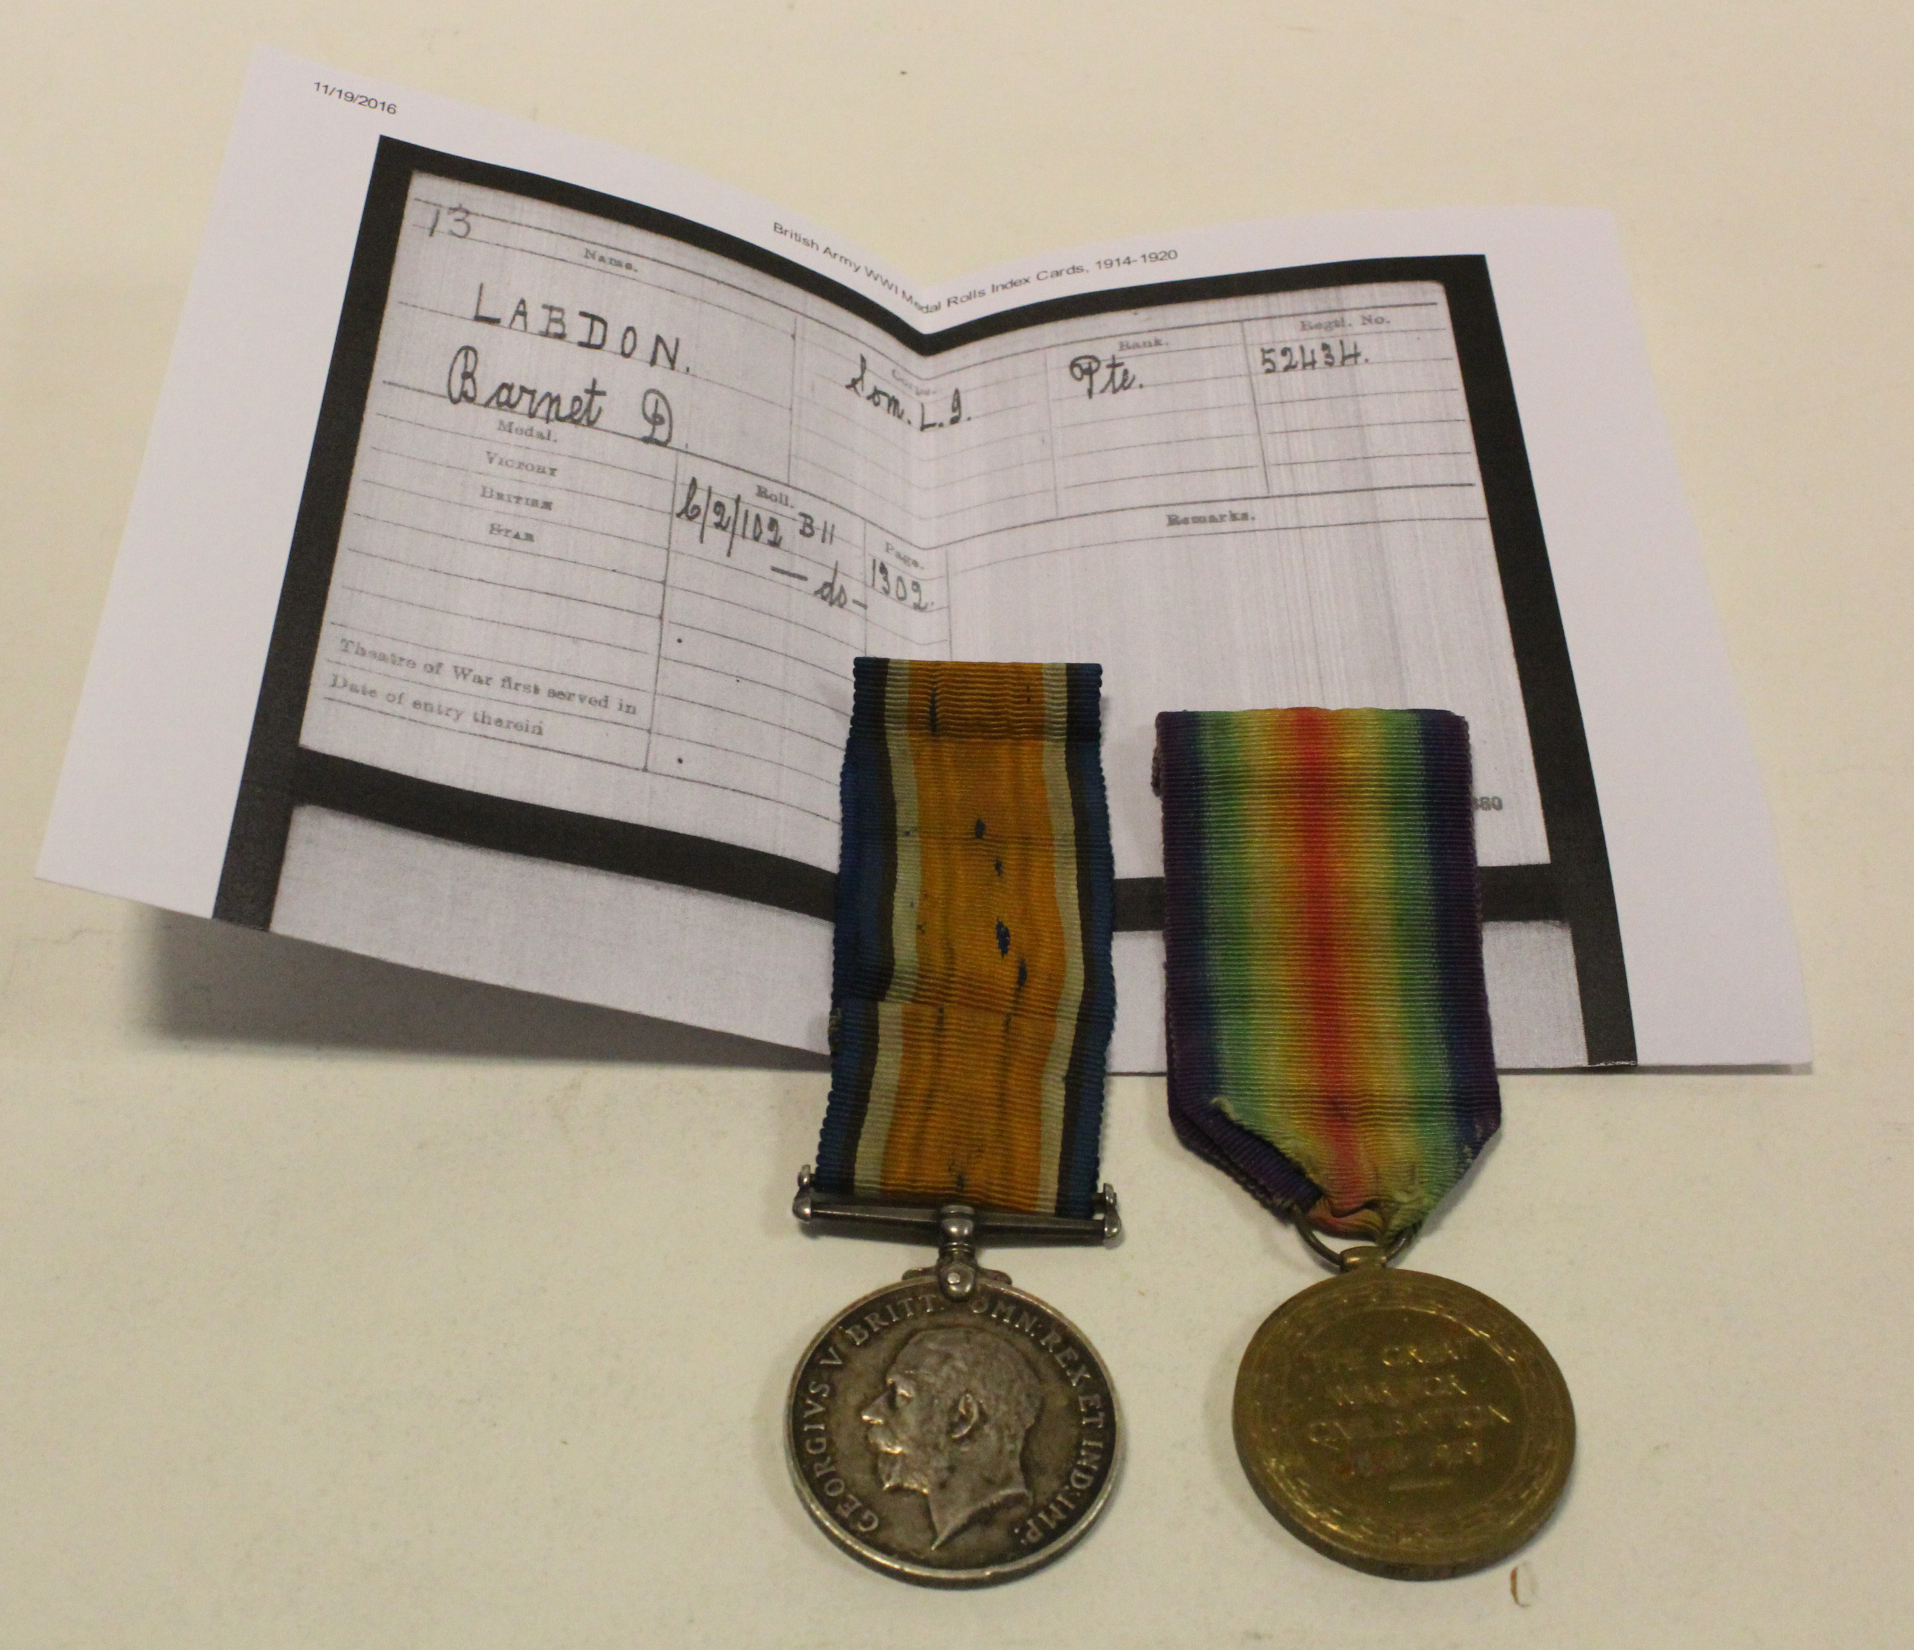 BWM & Victory Medal to 52434 Pte B D Labdon Som L.I. (2)